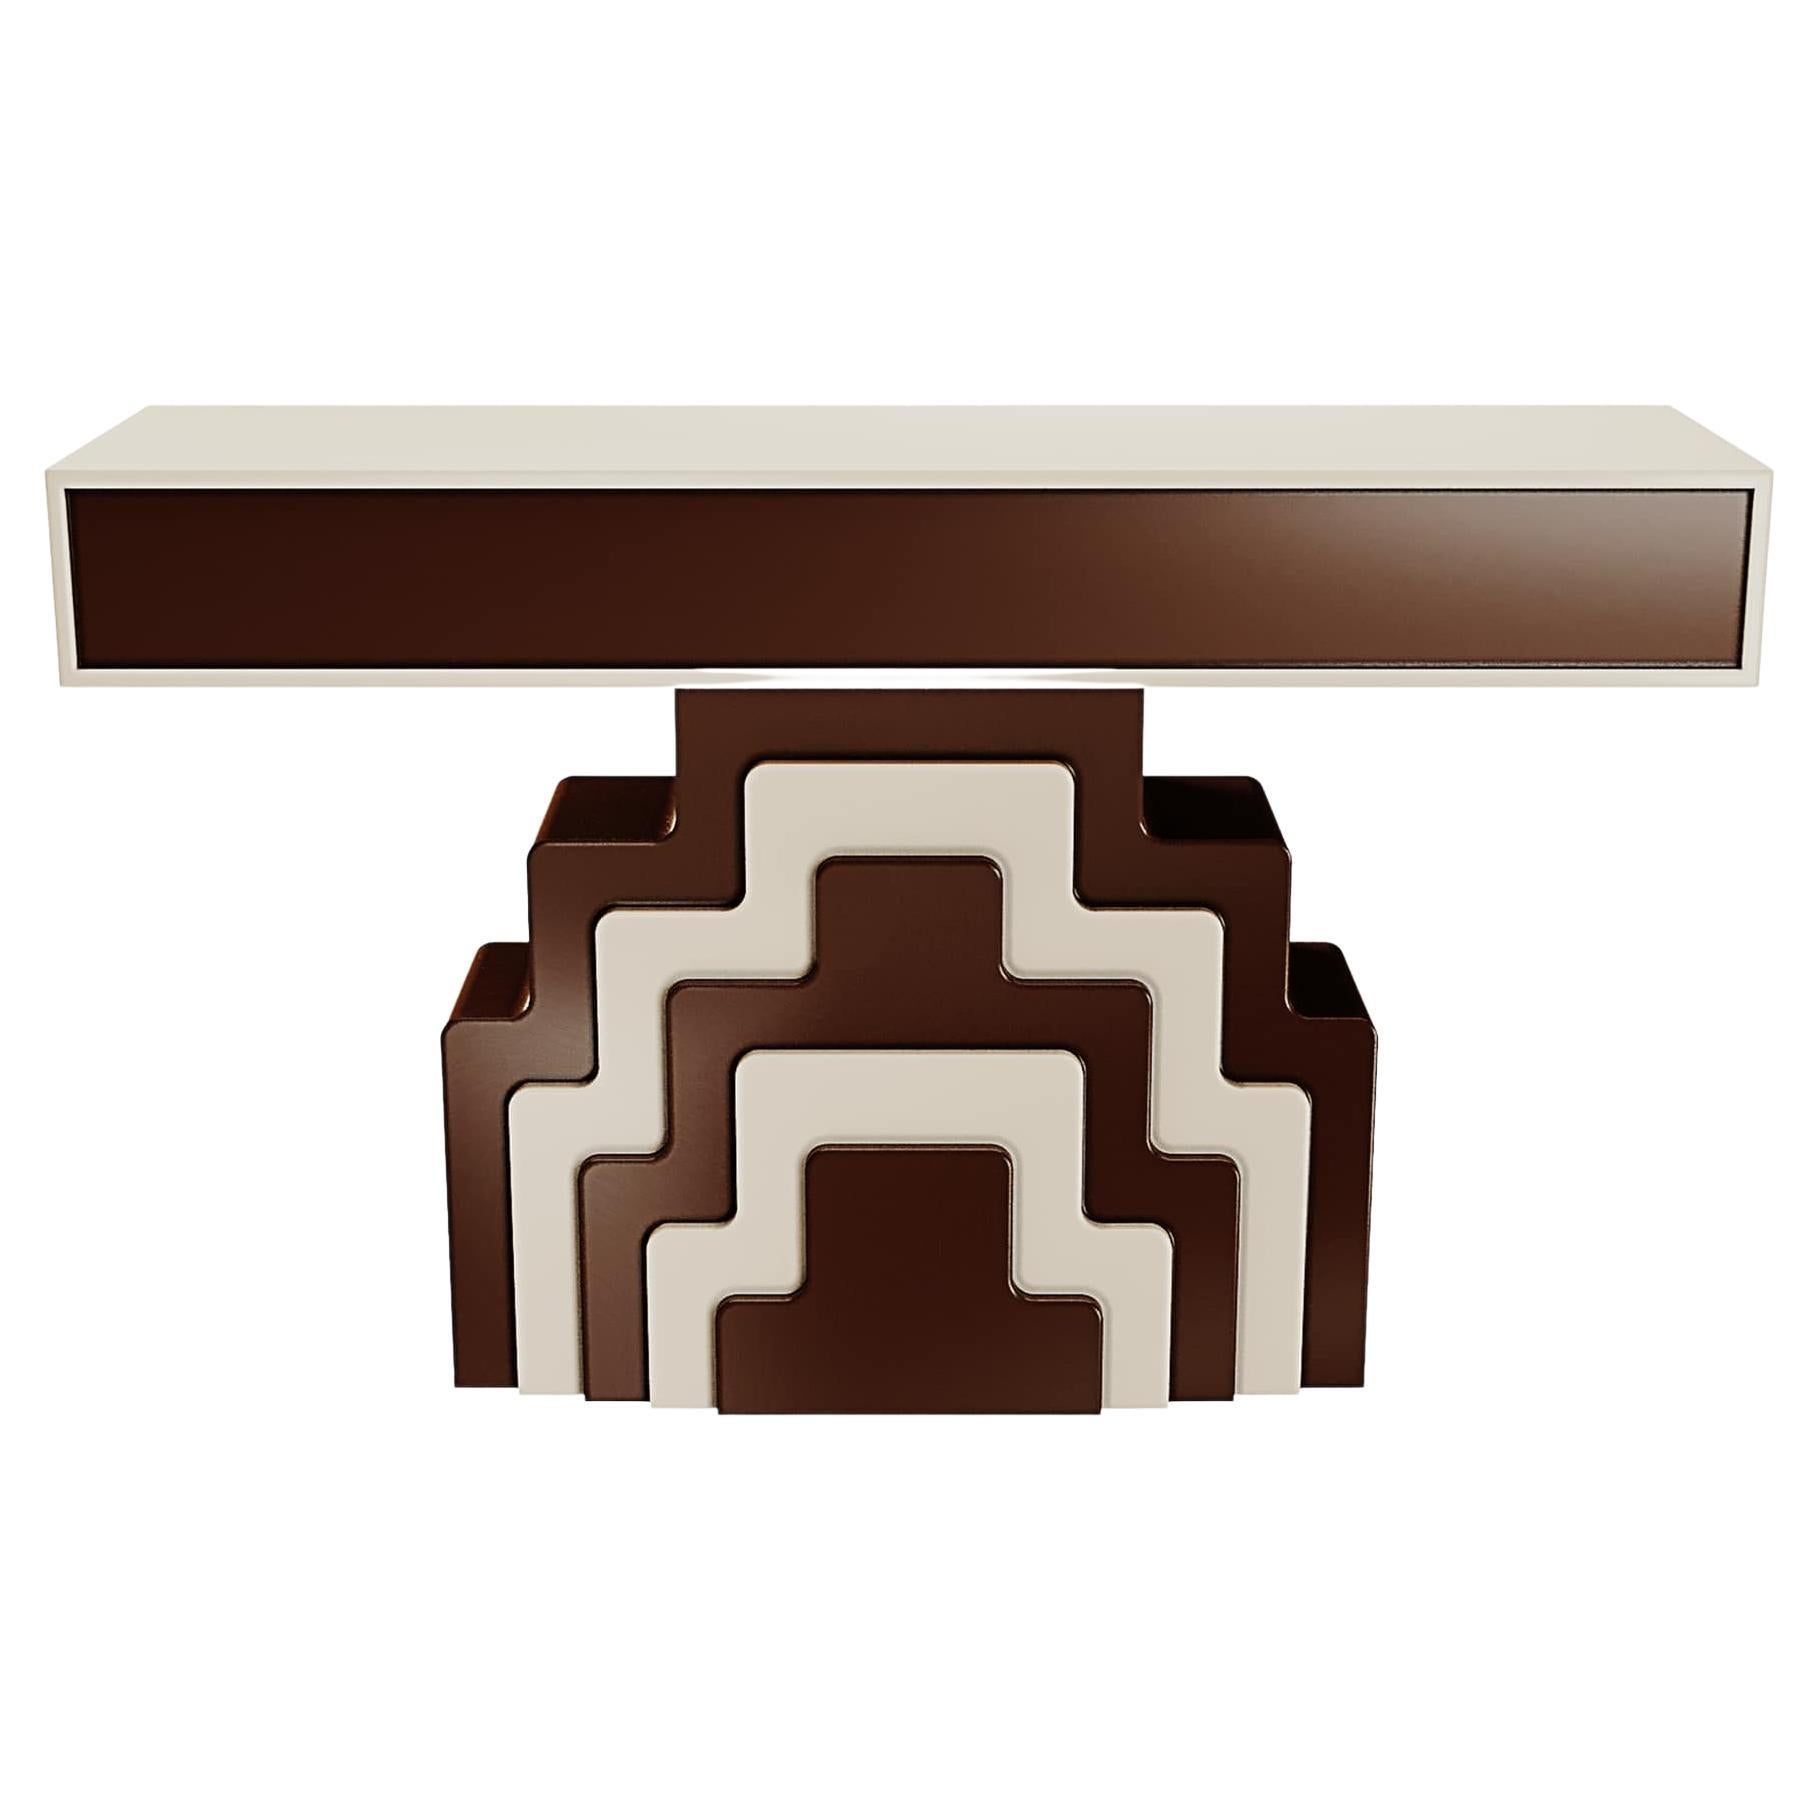 Art Deco inspiriert Geometic Wood Konsolentisch Braun & Weiß Lack Zwei Schubladen